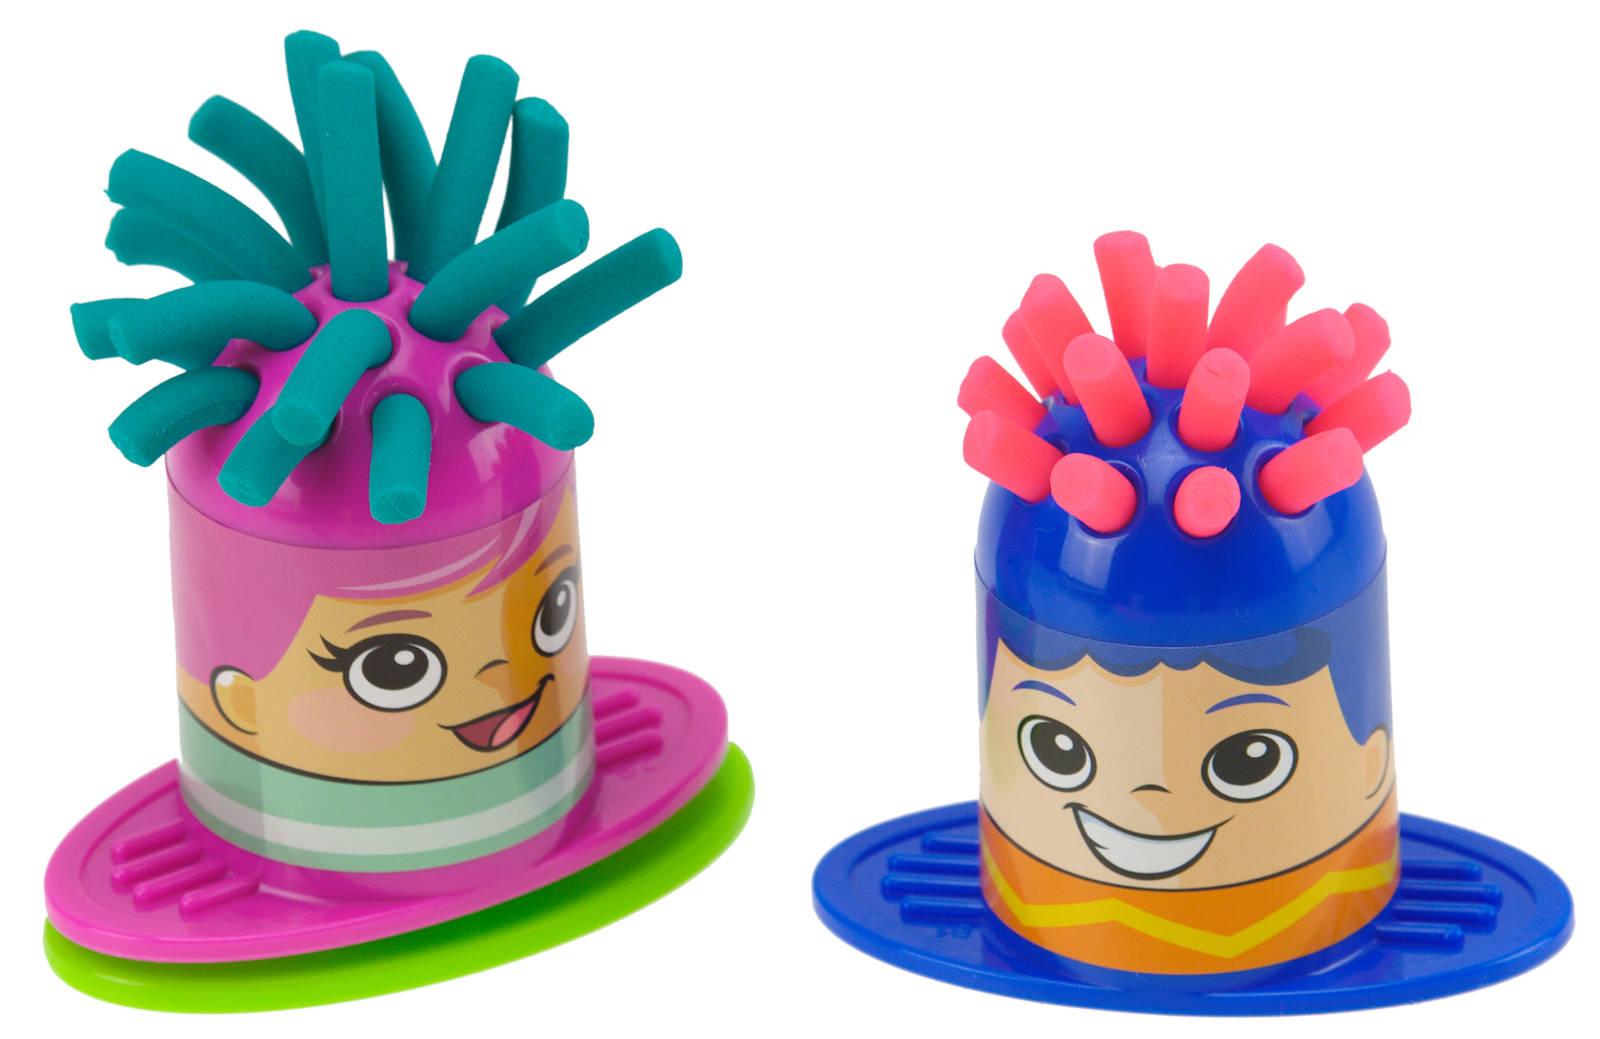 Play-Doh Friseurspaß Create and Cut Kinderknete Frisur Knete Set Knetwerkzeuge 